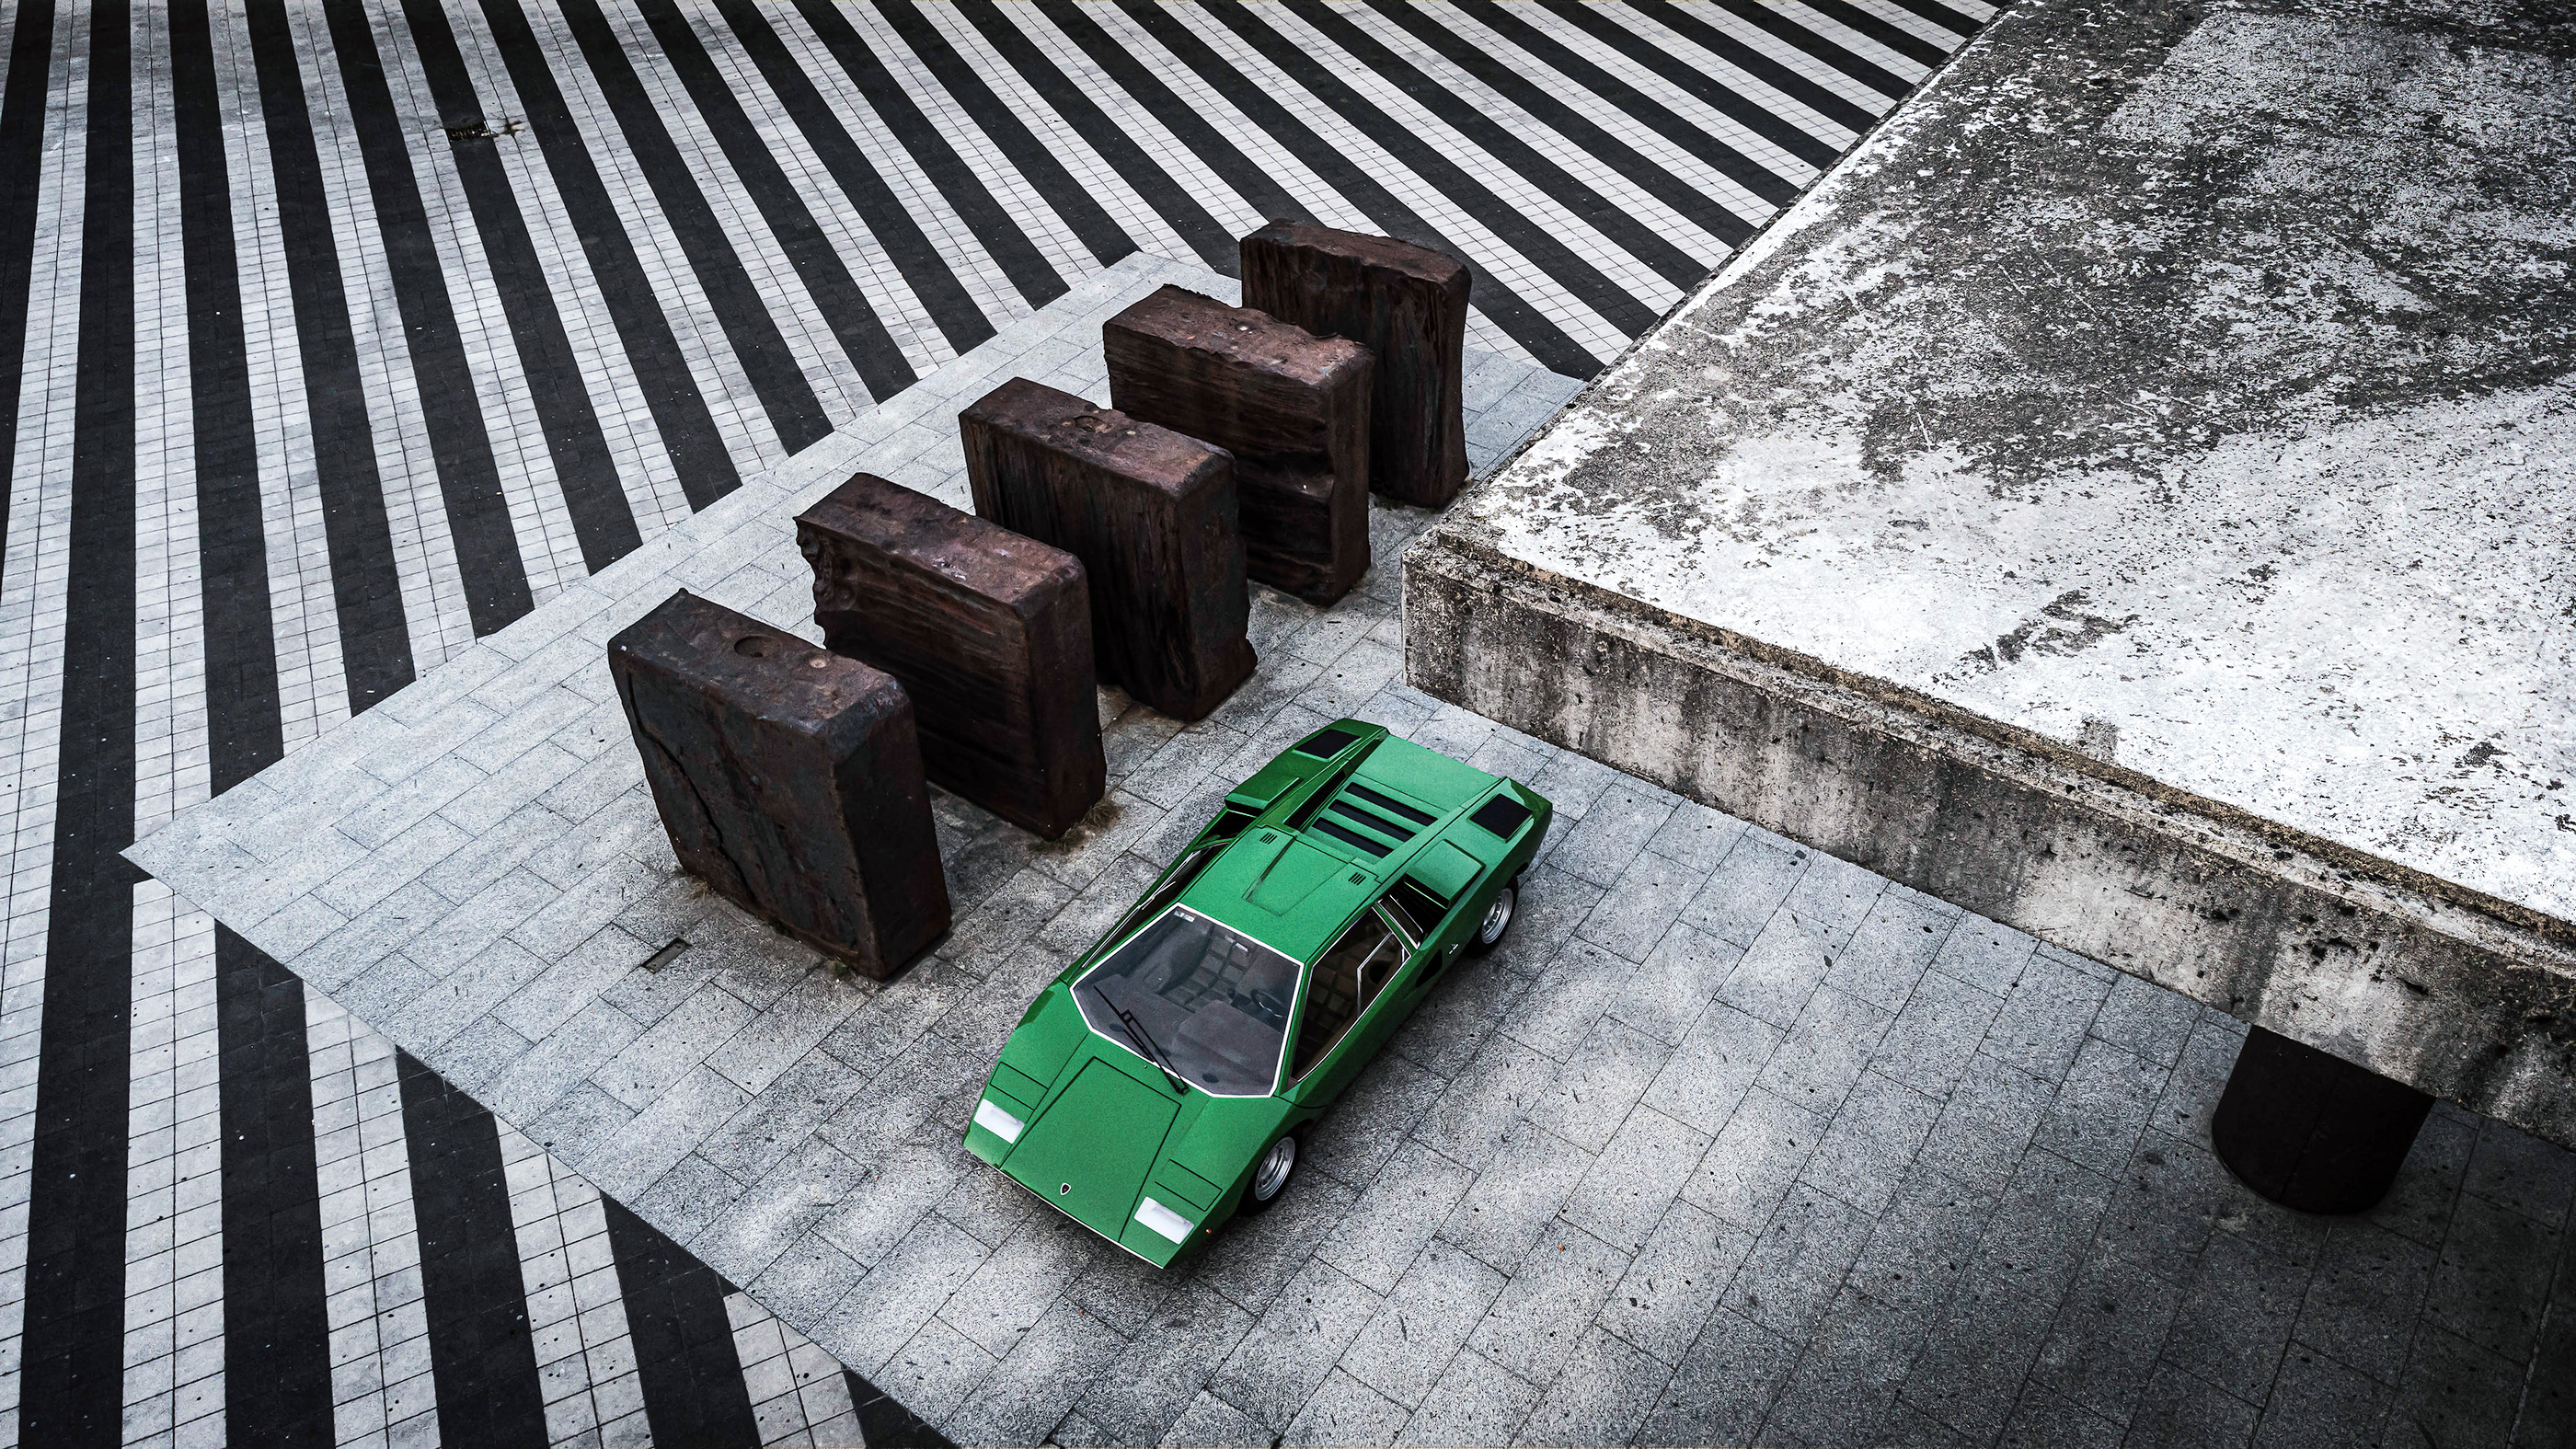 General 2800x1575 Lamborghini Countach green cars car vehicle Lamborghini italian cars Volkswagen Group